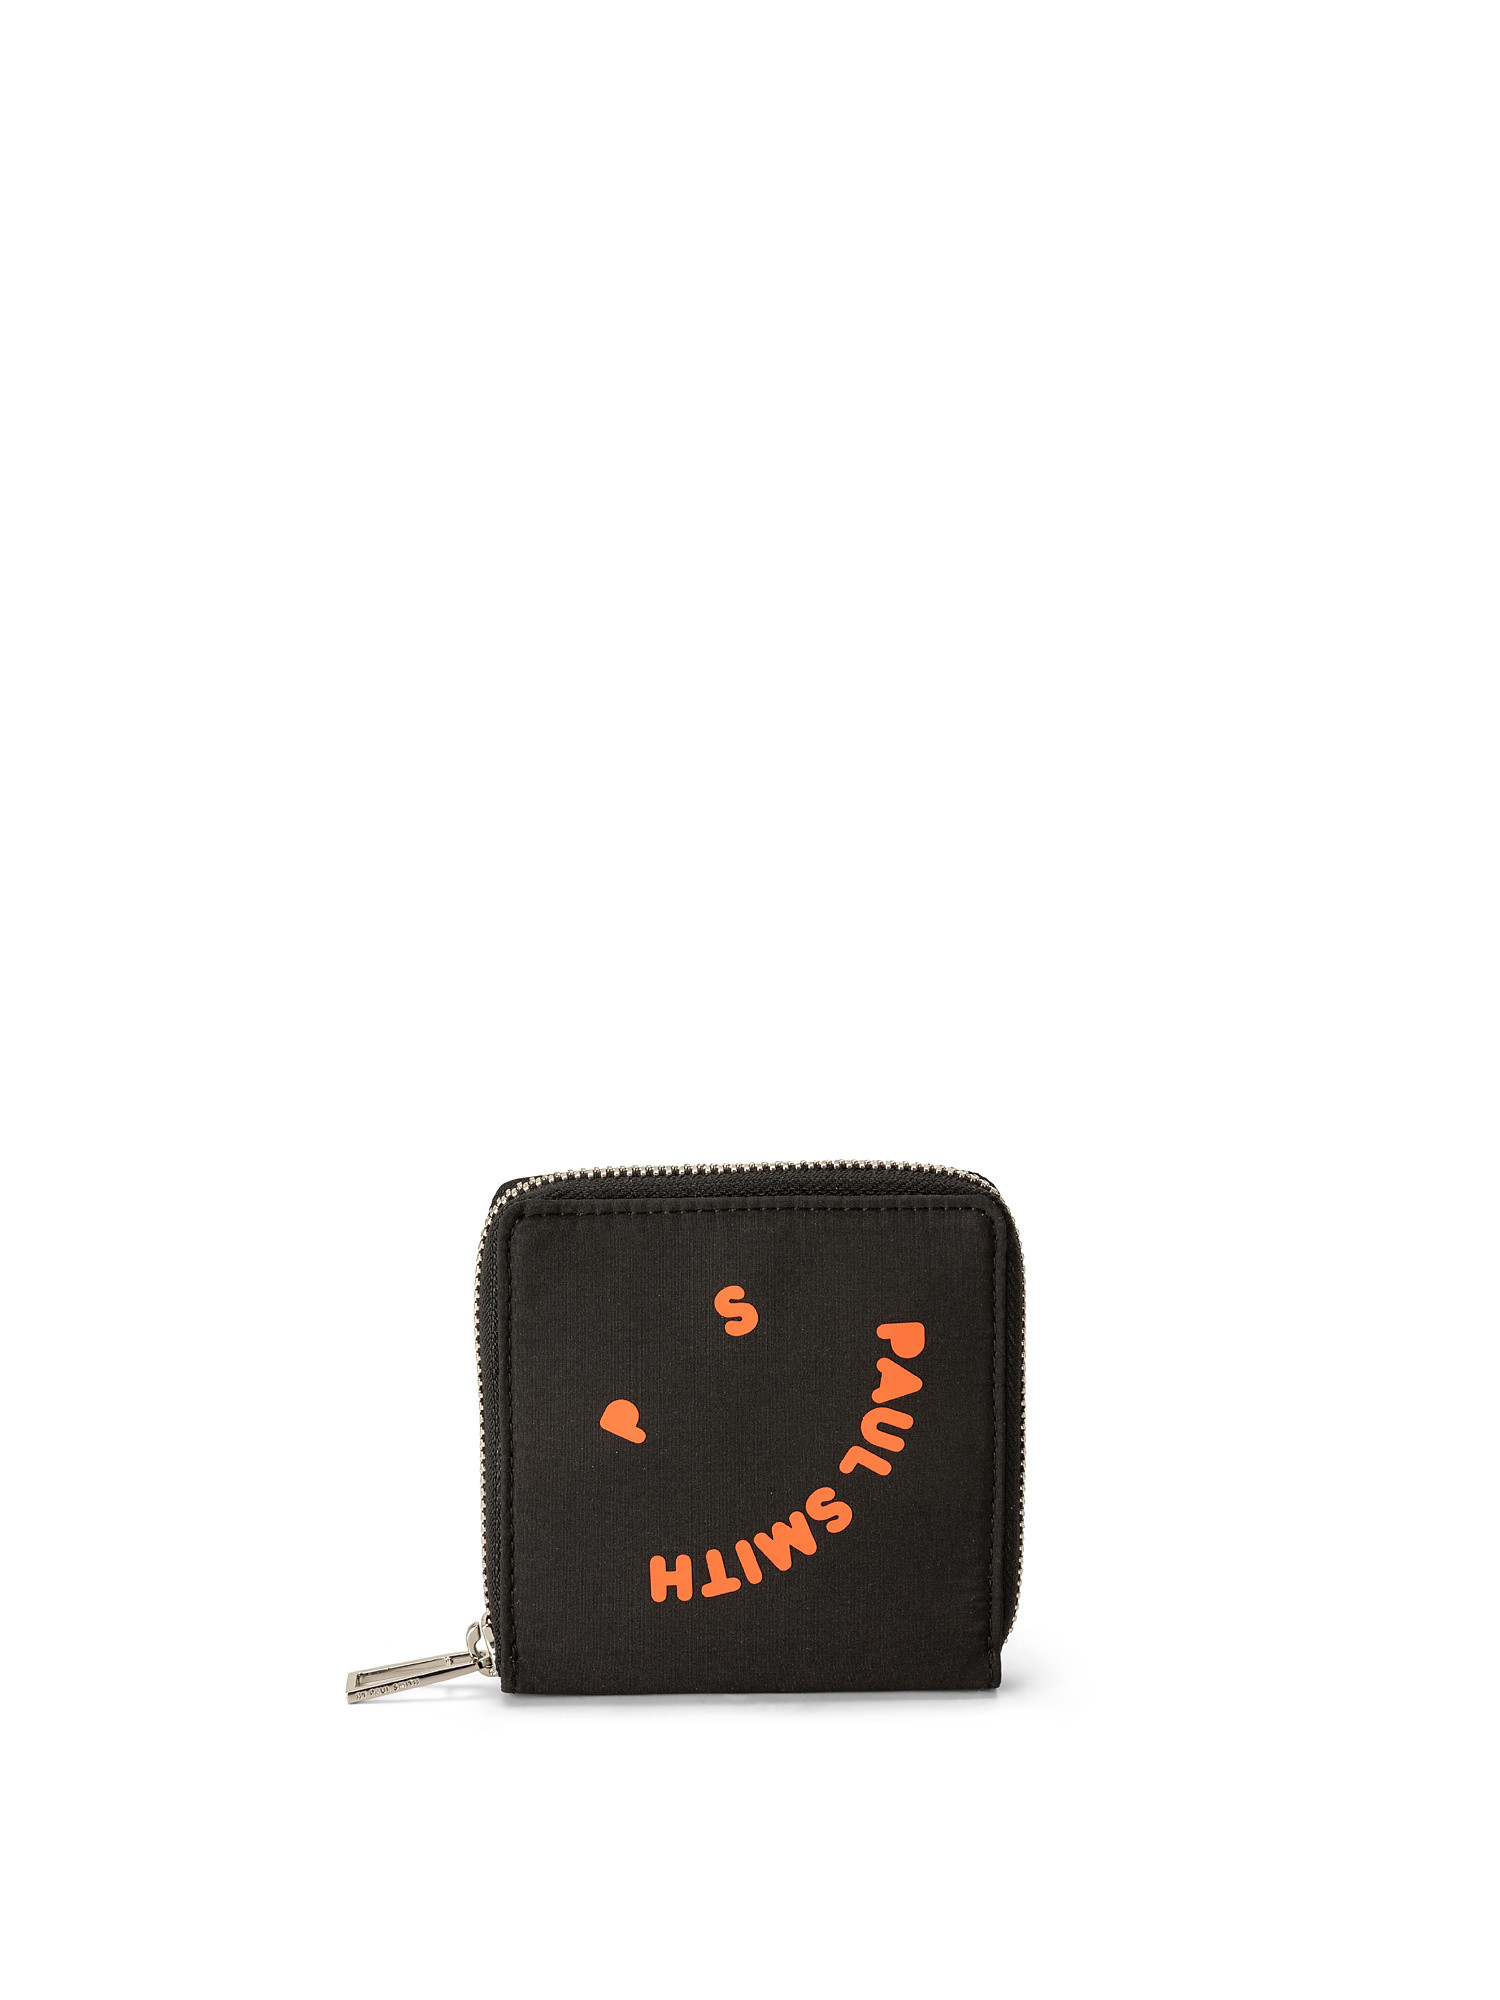 Men's Black Zip-Around 'Happy' Wallet, Black, large image number 0